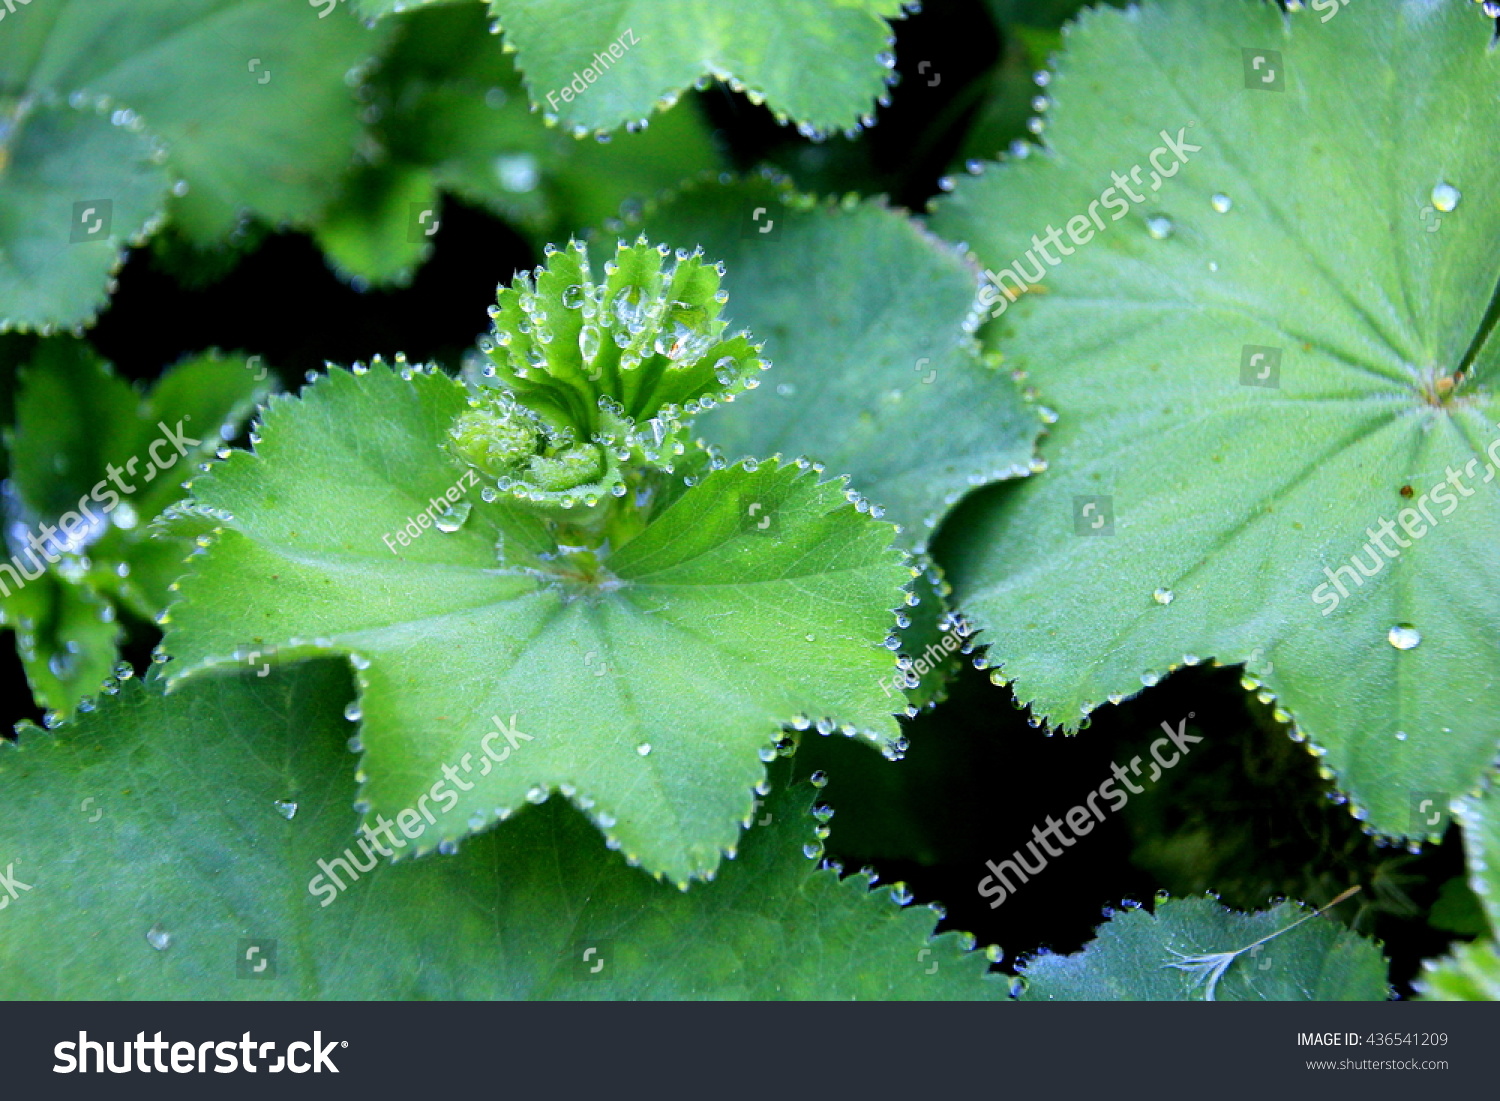 Frauenmantel: green herbal plant growing in europe #436541209